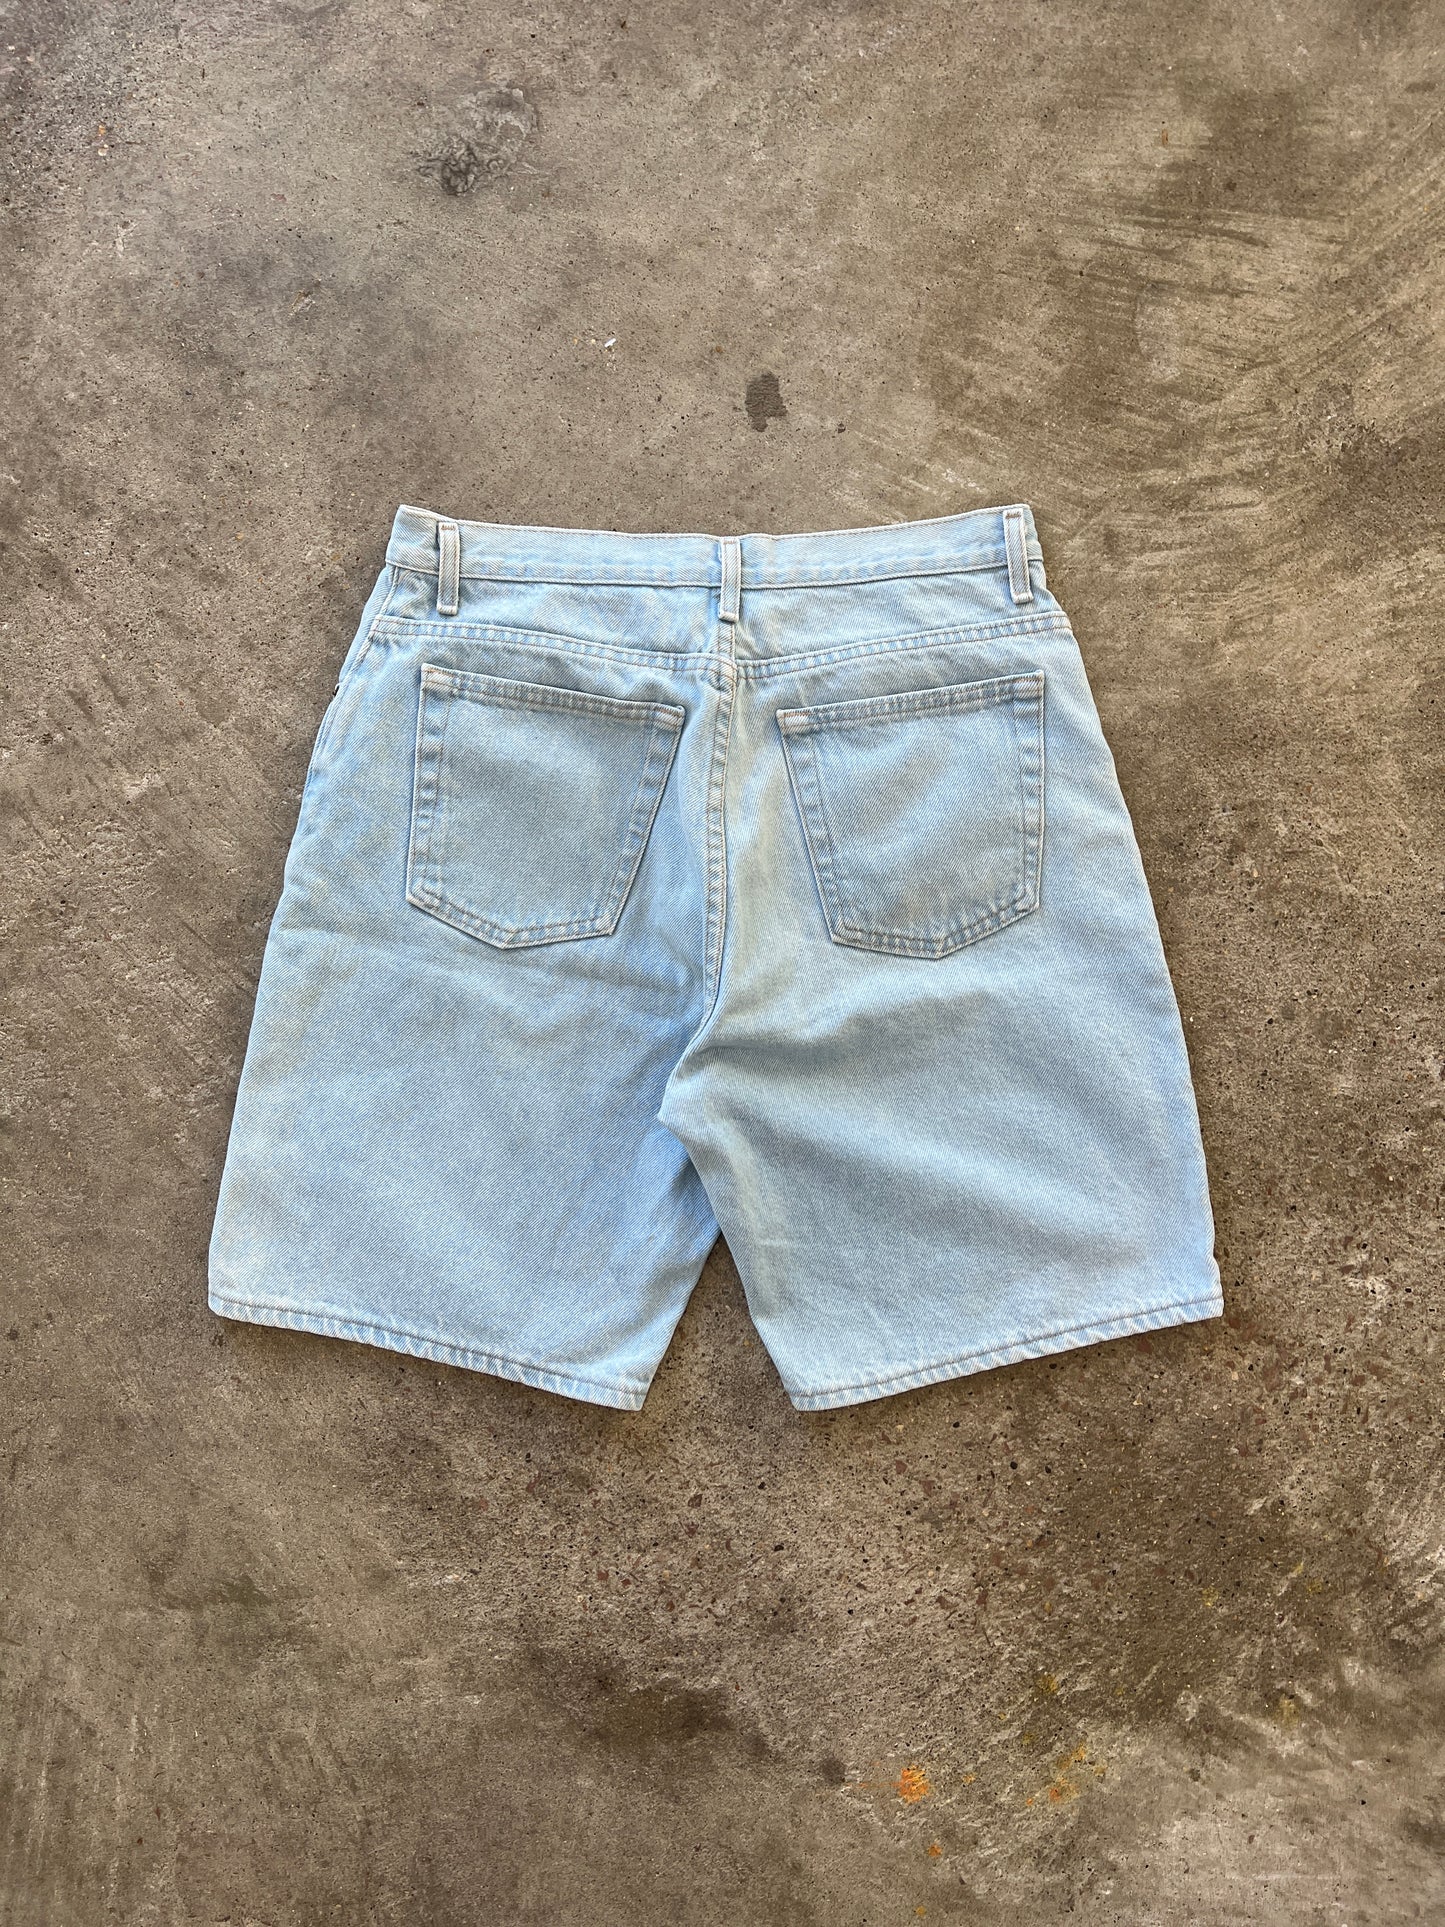 Vintage Light Wash Denim Shorts - 31